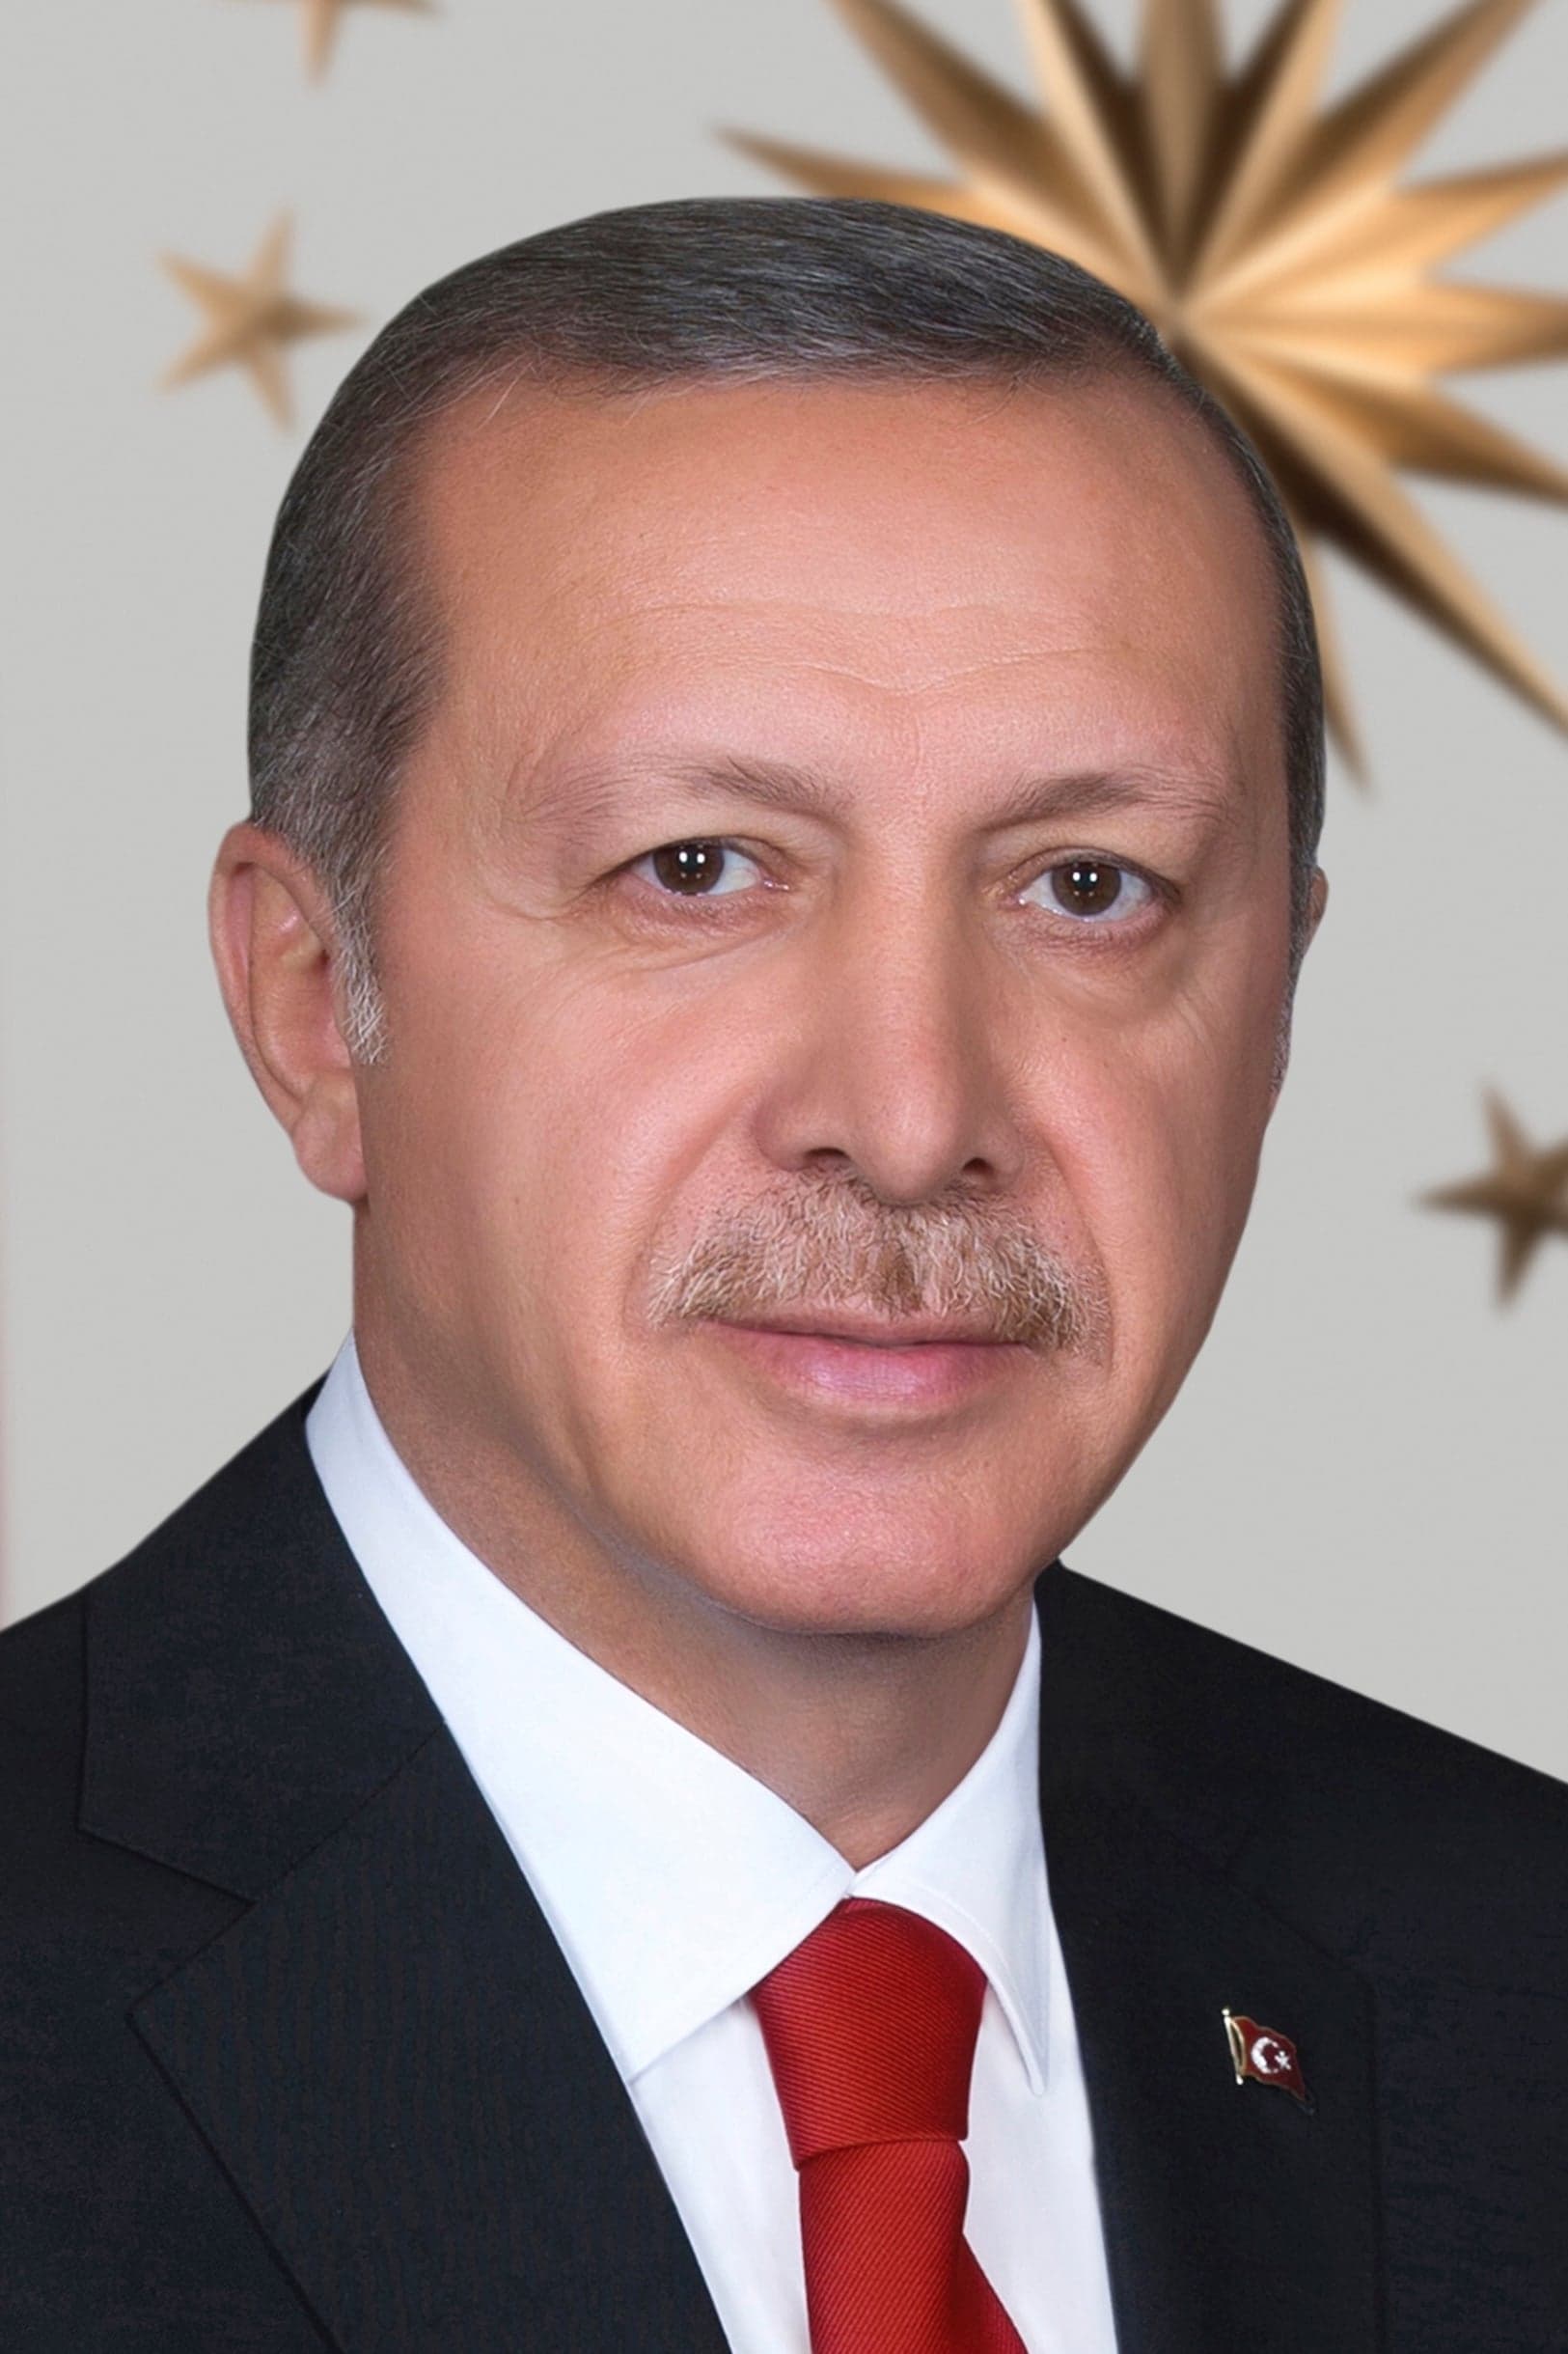 Recep Tayyip Erdoğan | Self (uncredited)